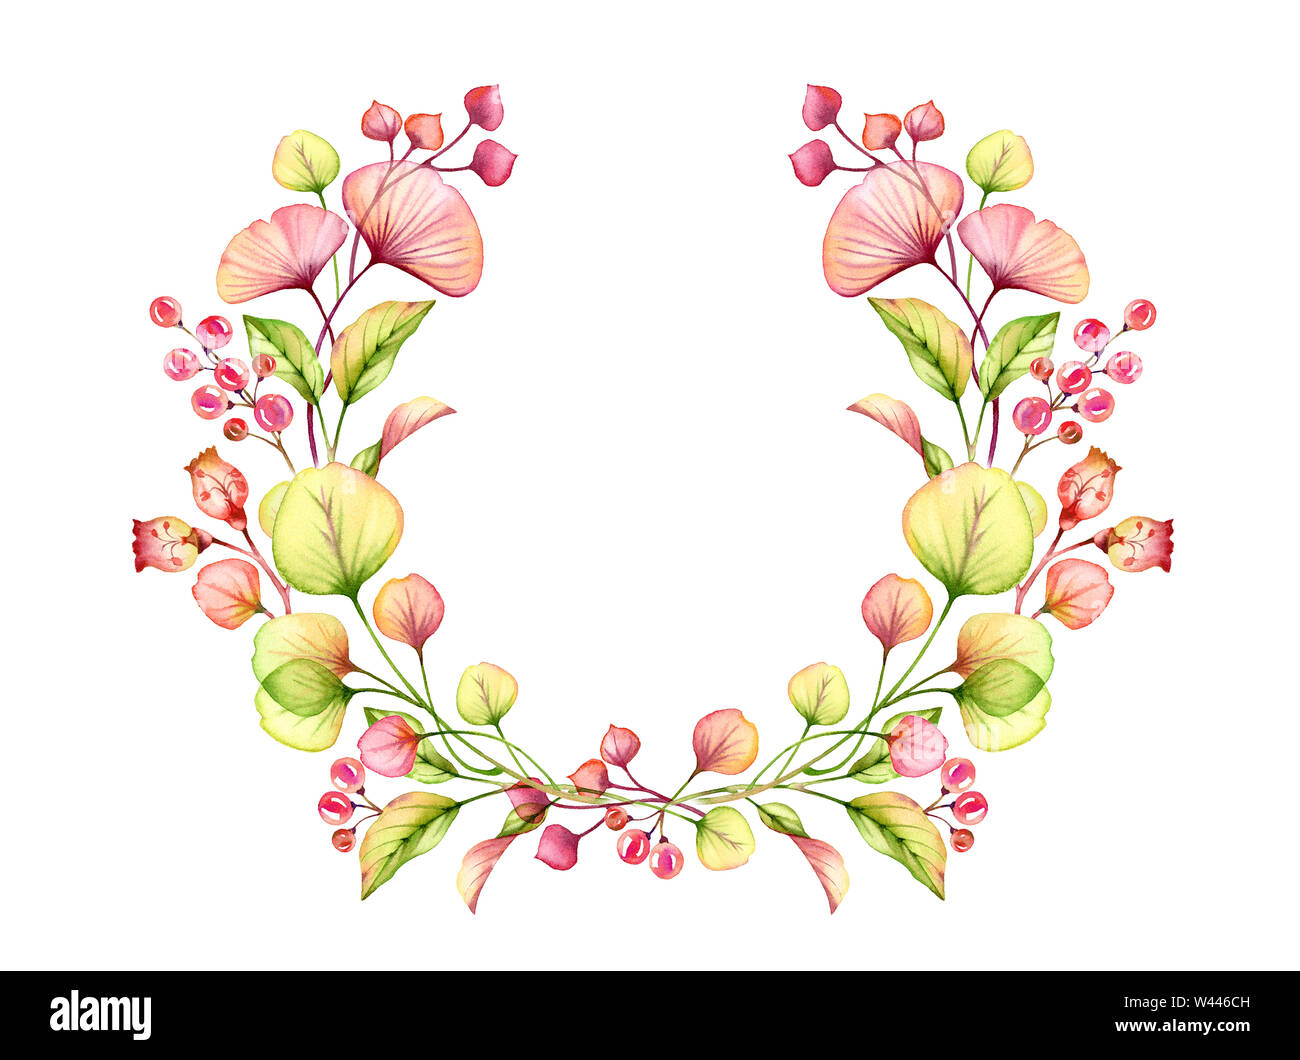 Acquerello trasparente di composizione floreale ghirlanda rotonda di bacche e foglie, rami in rosa pastello, verde arancione rosso corallo illustrazione botanica Foto Stock